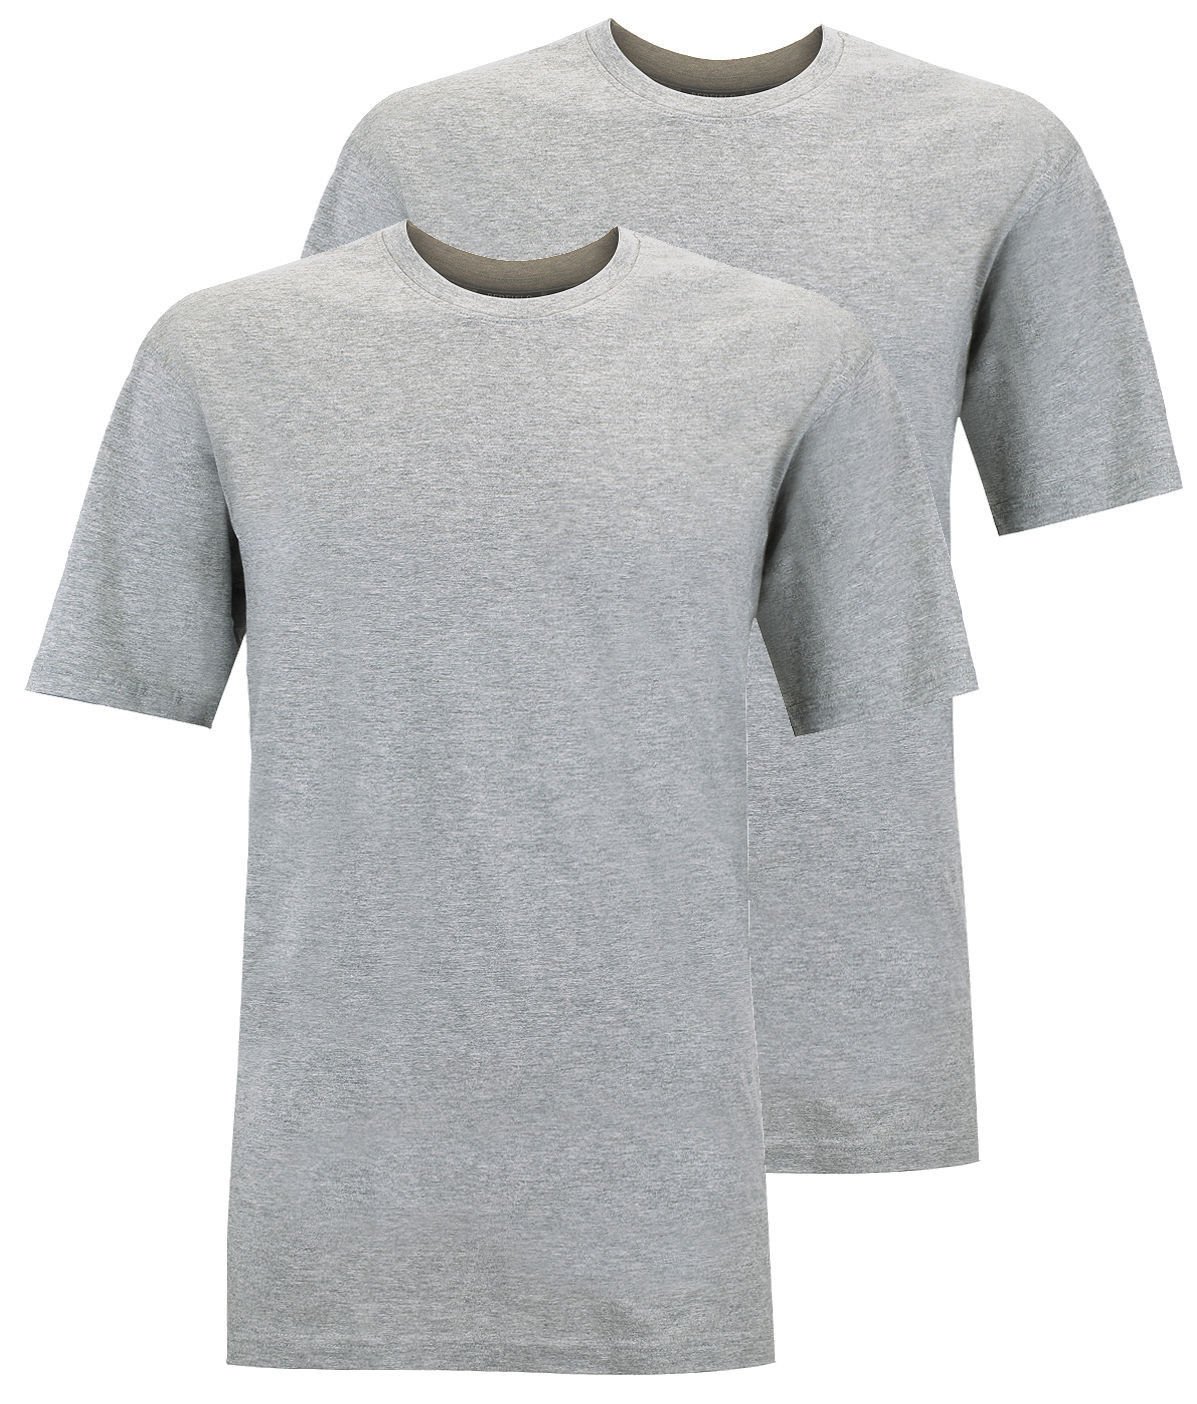 Redfield Doppelpack T-Shirt Übergröße grau Melange, Größe:4XL